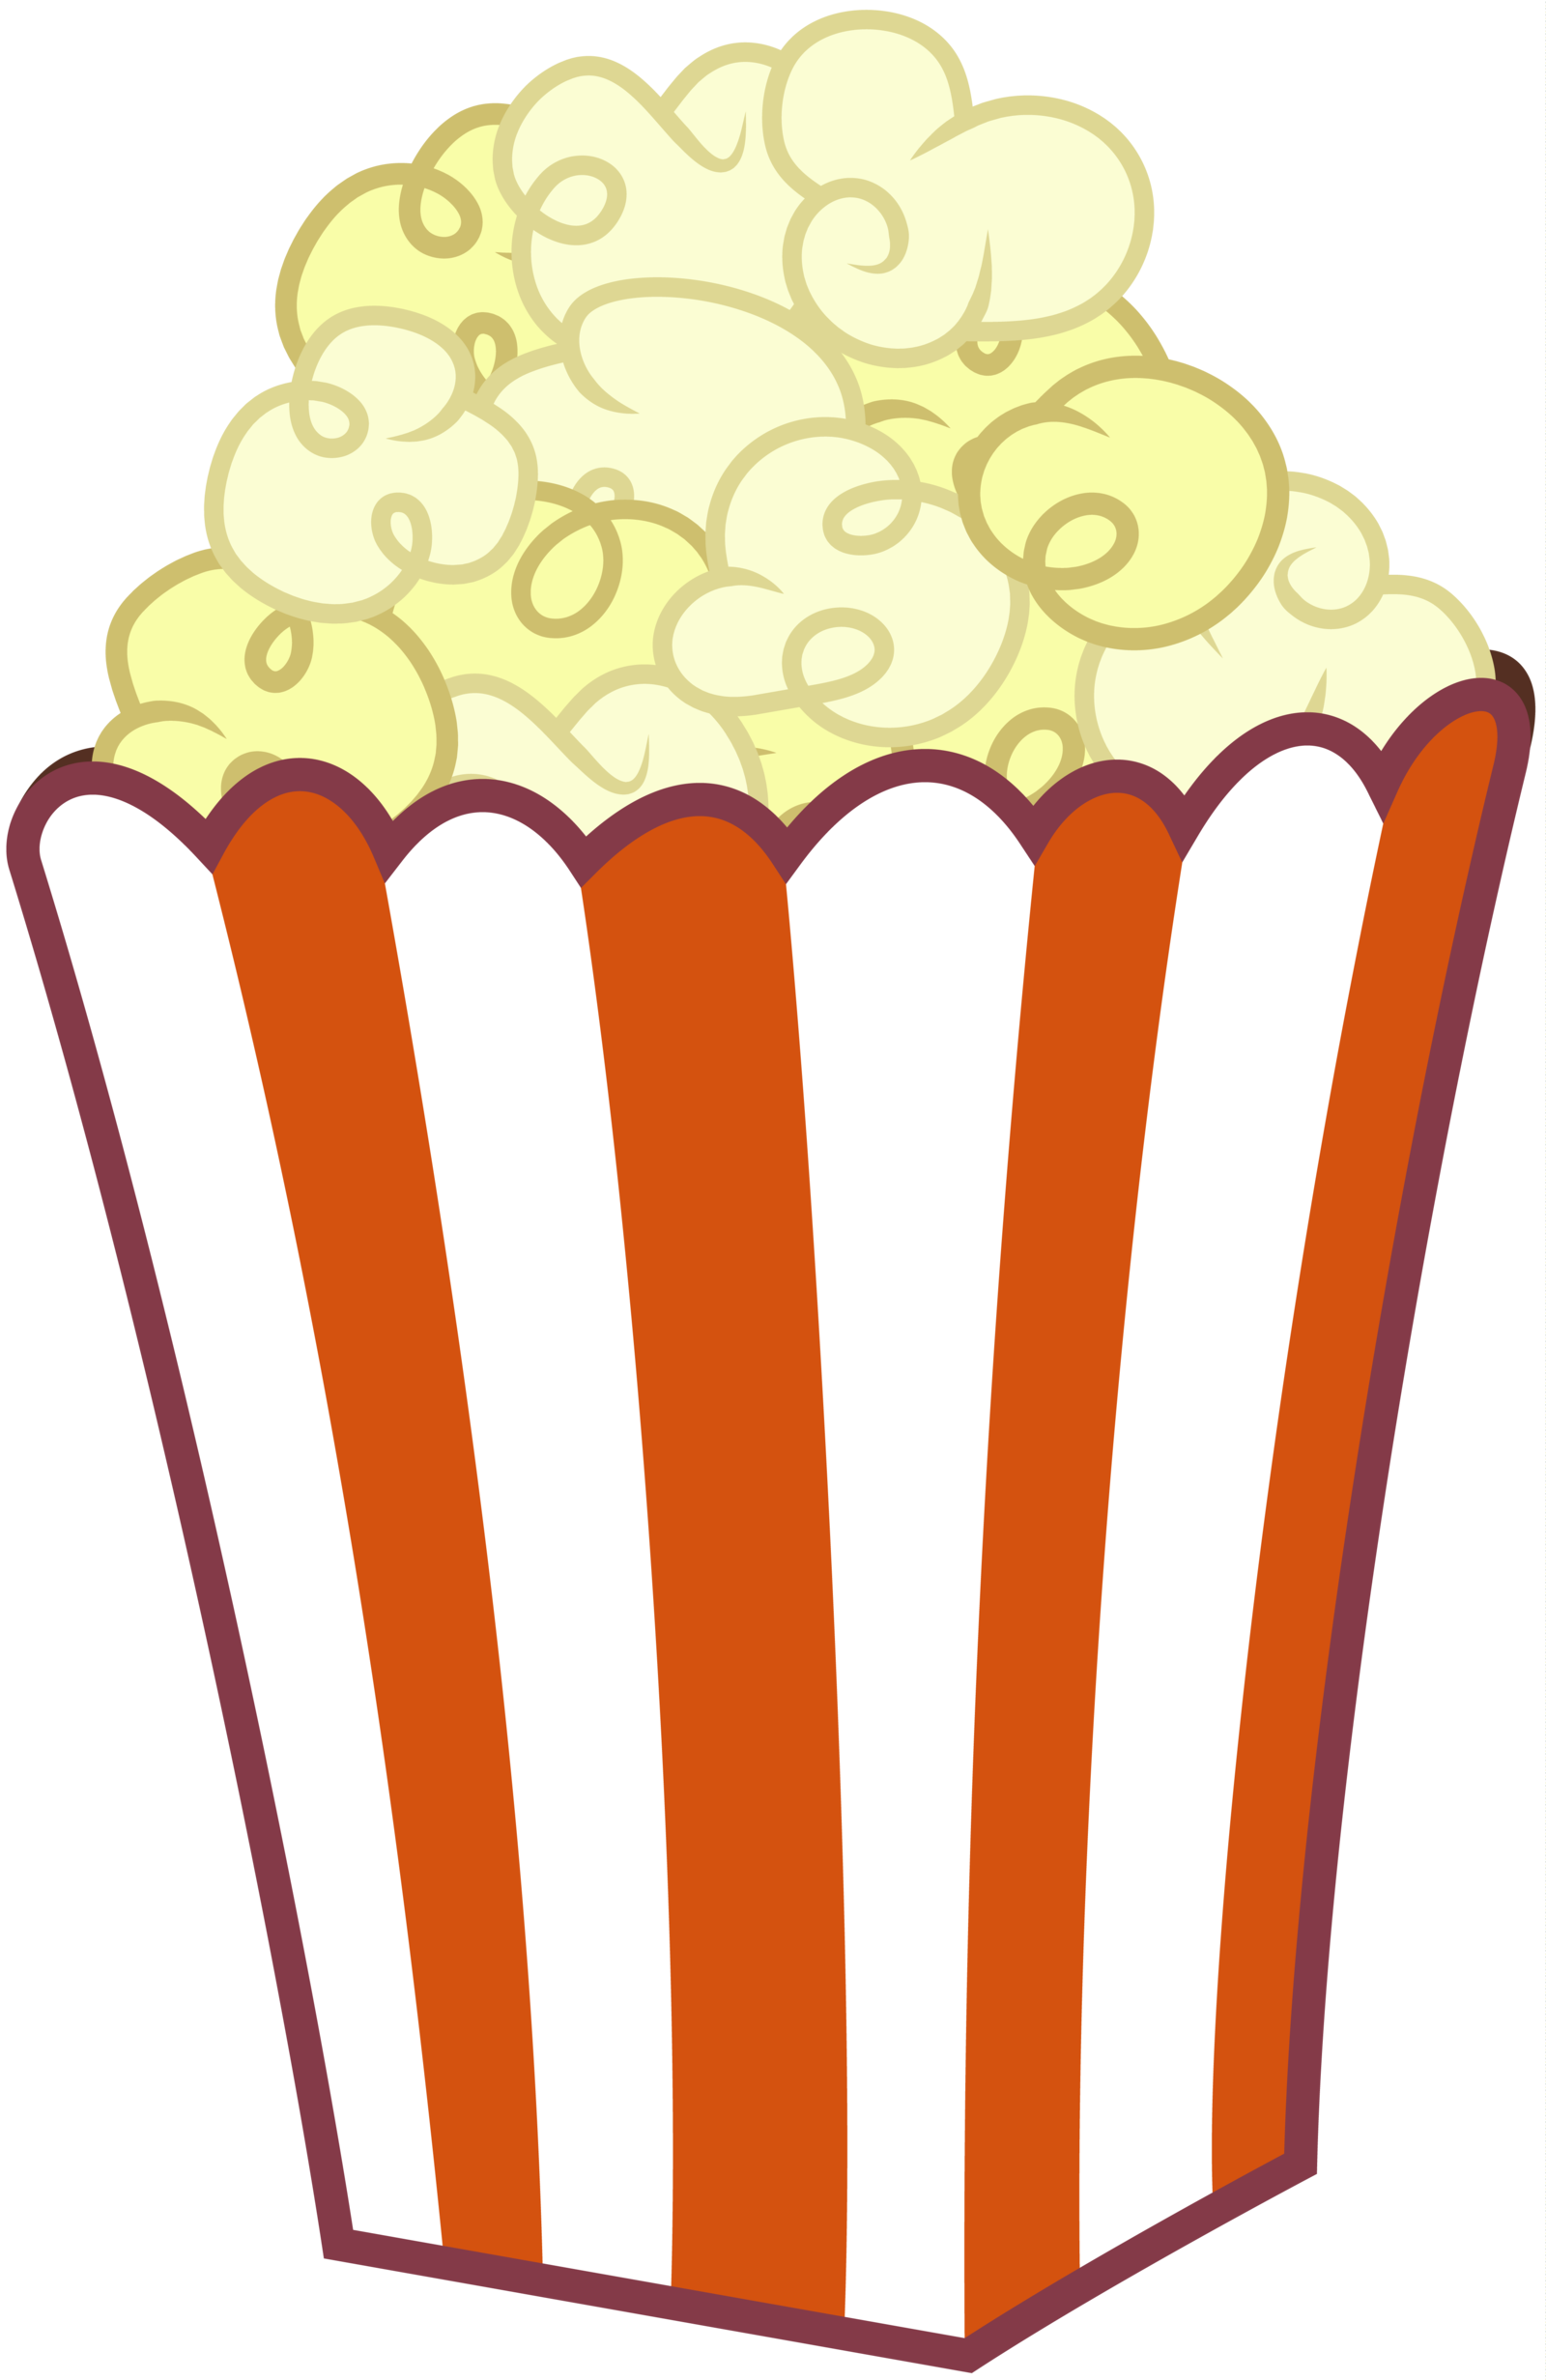 Clip Art Bowl Of Popcorn